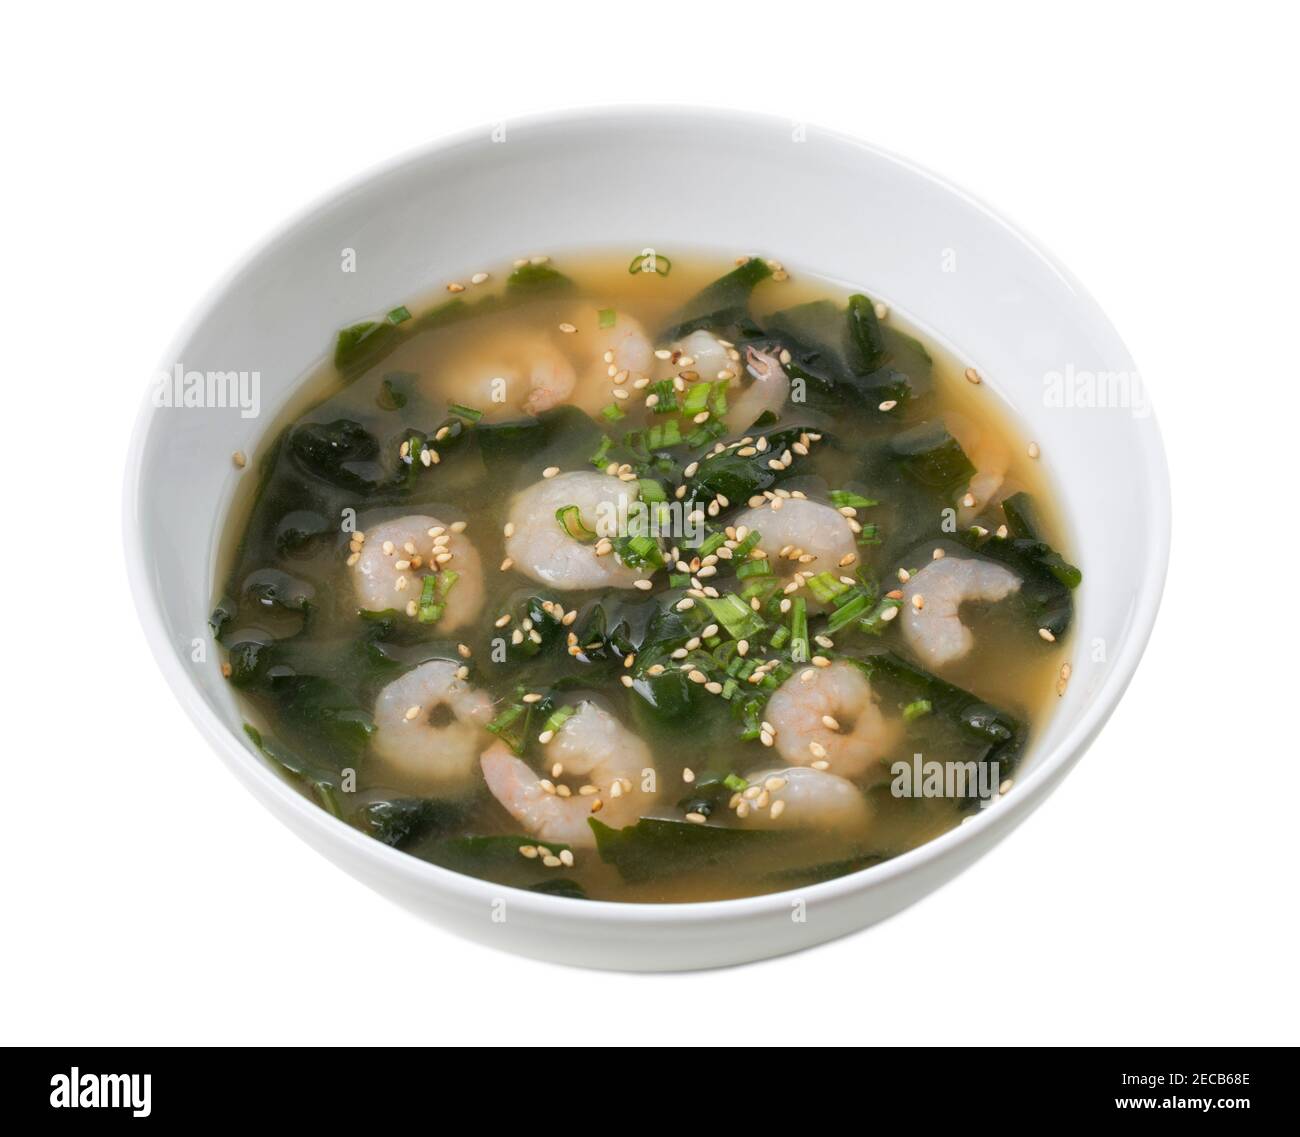 Soupe japonaise miso avec crevettes et algues kombu. Isolé sur un fond blanc. Banque D'Images